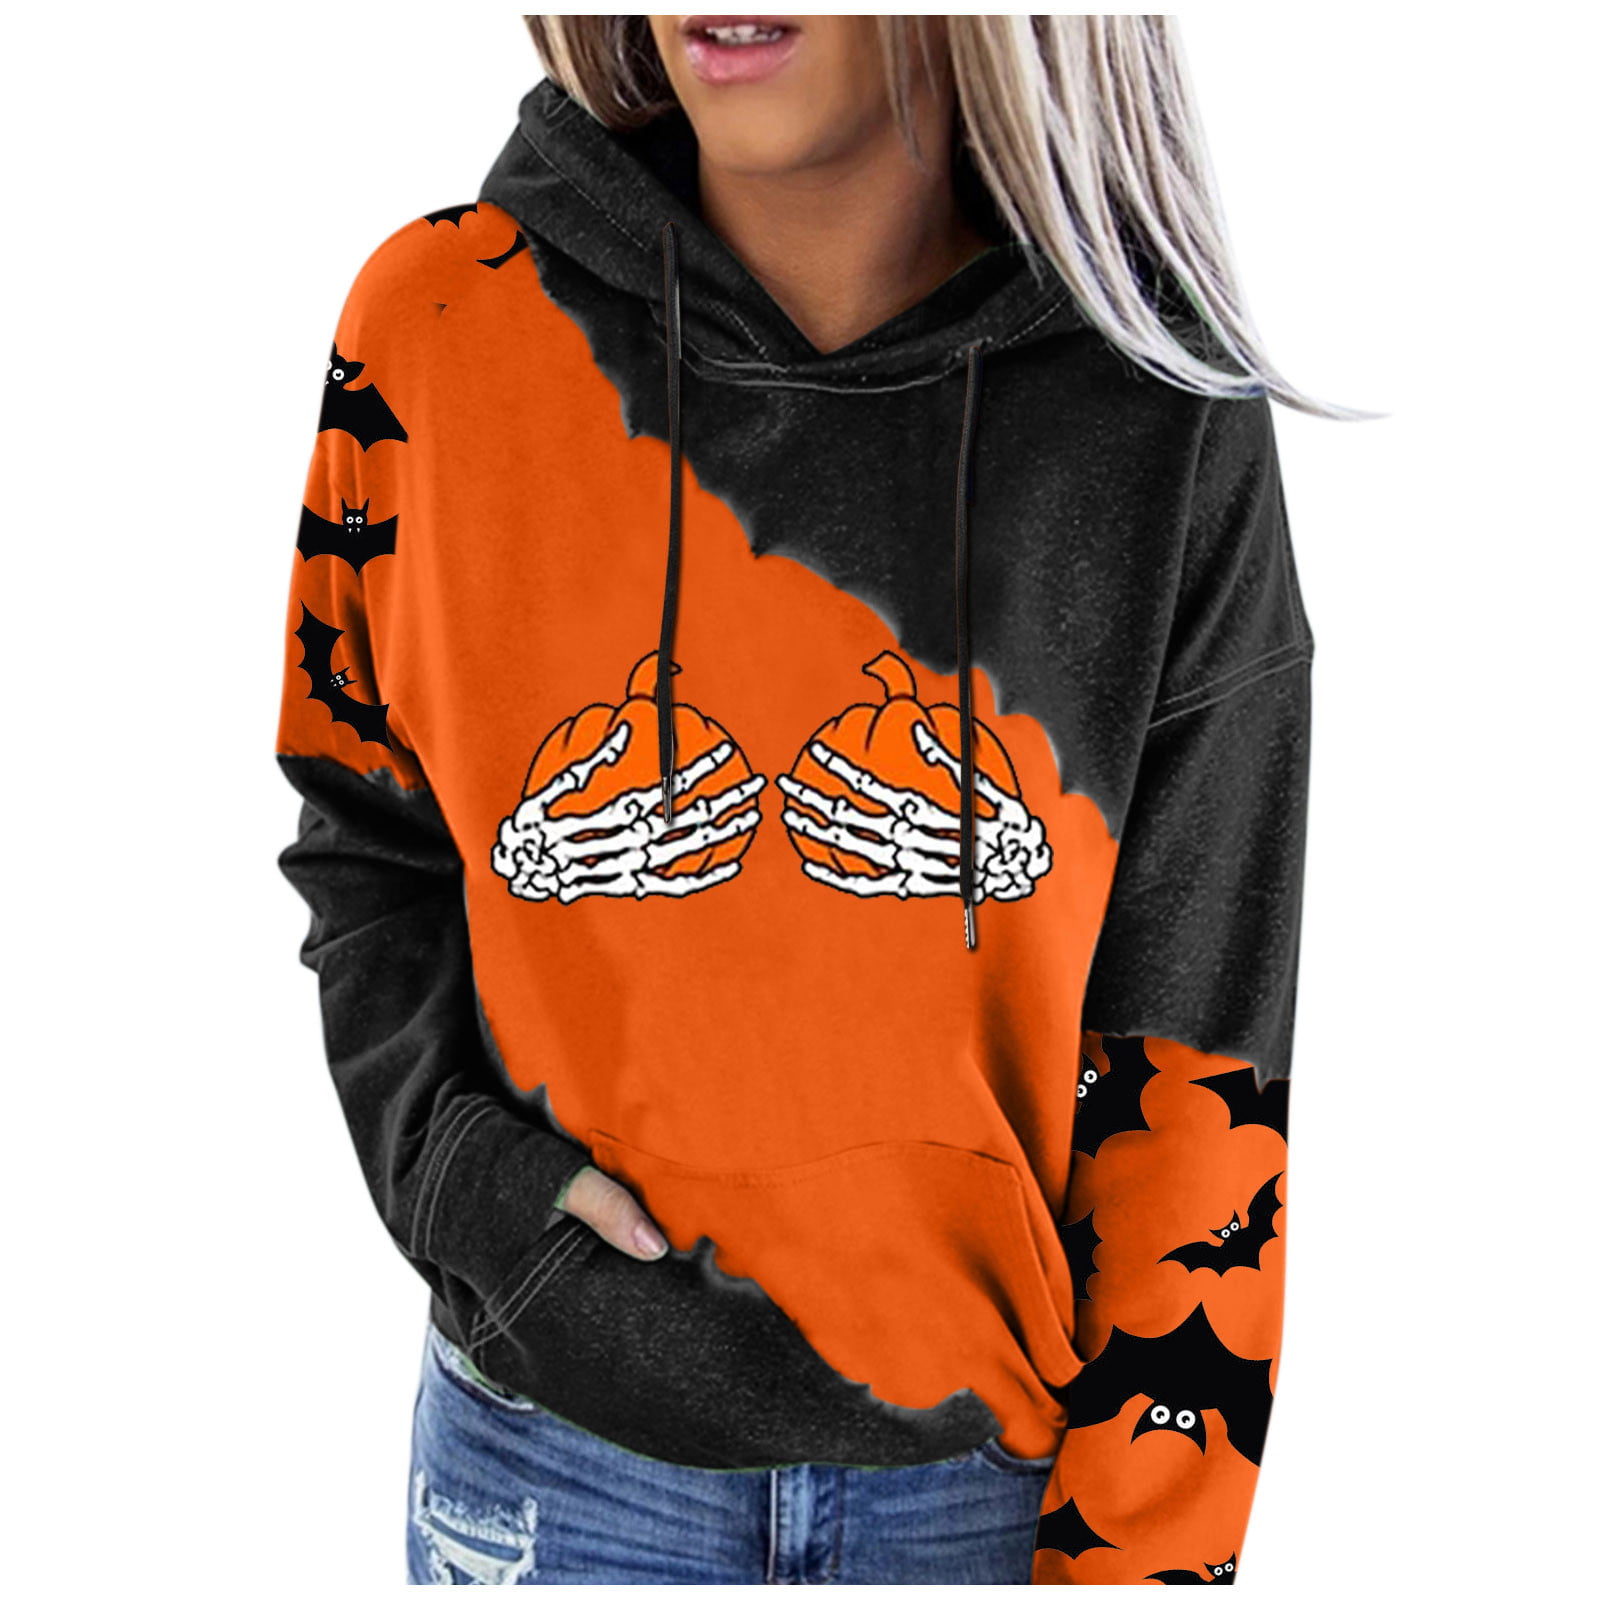 Swyss Hooded Sweatshirt,Womens Halloween Printed Long-Sleeve Hooded Pullover Casual Hoodie Tops 